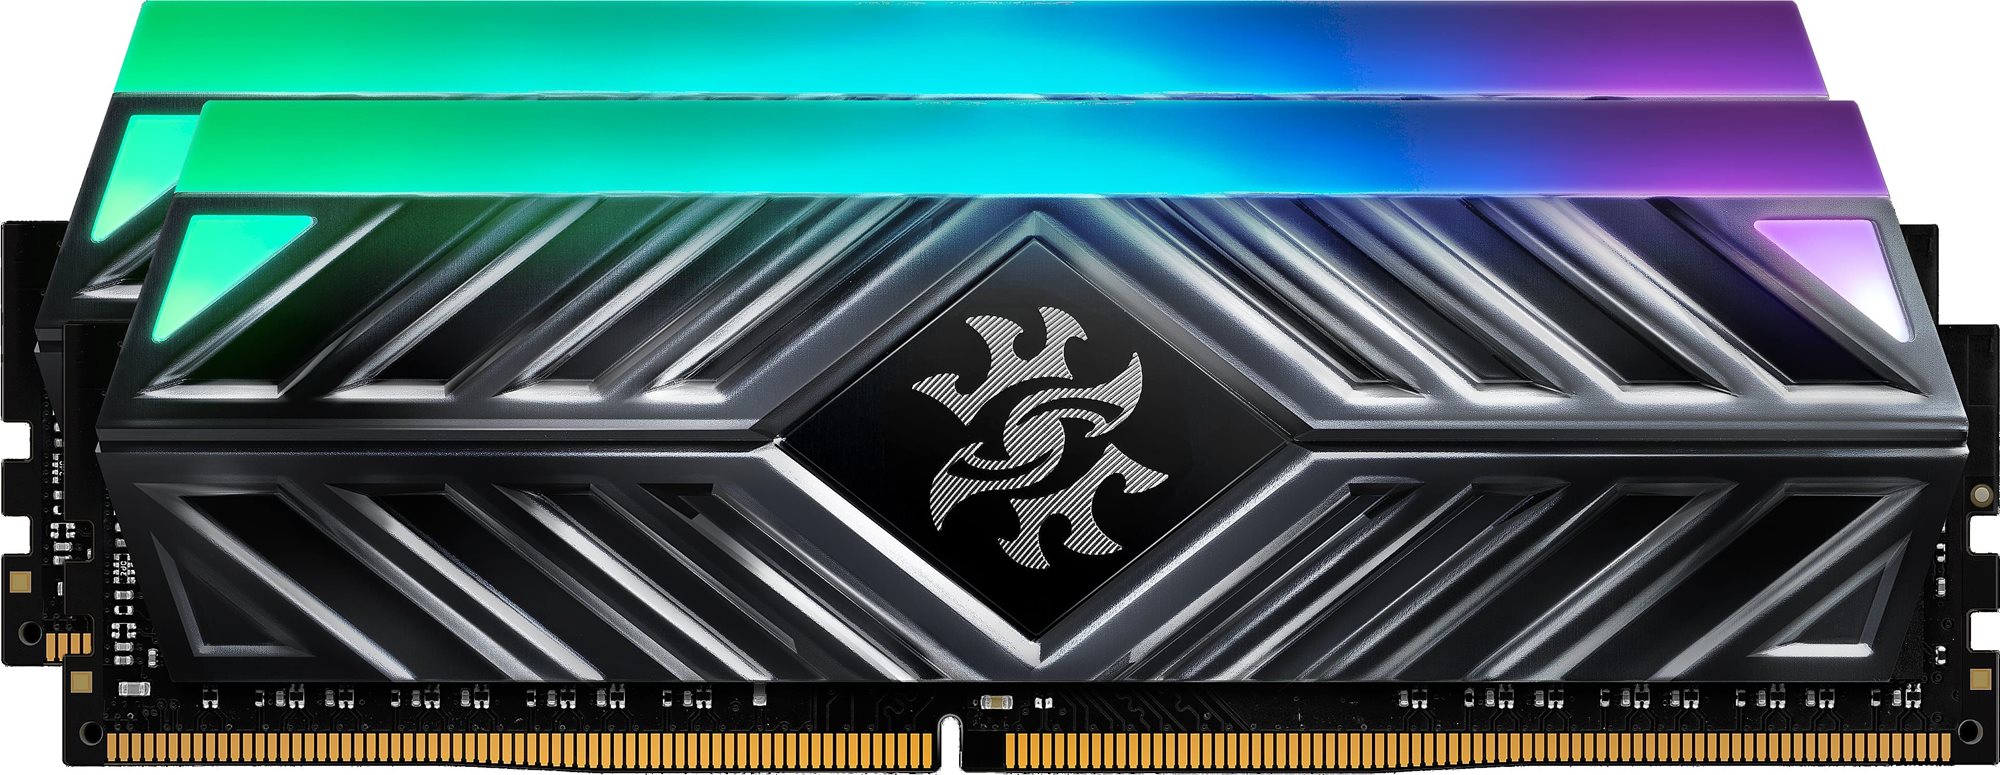 RAM memória ADATA XPG D41 16GB KIT DDR4 3200MHz CL16 RGB Black